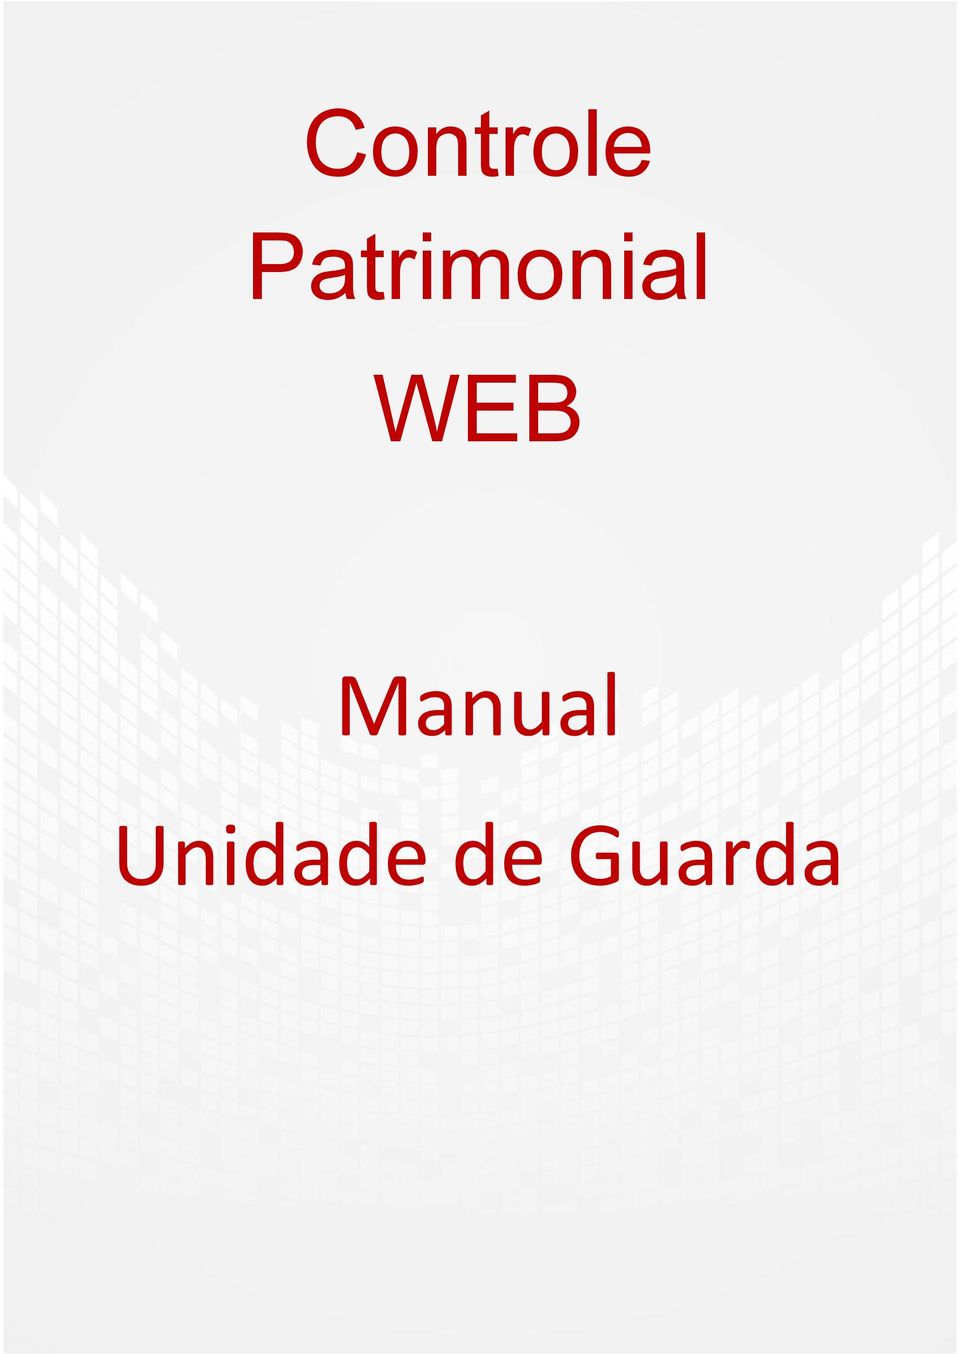 WEB Manual